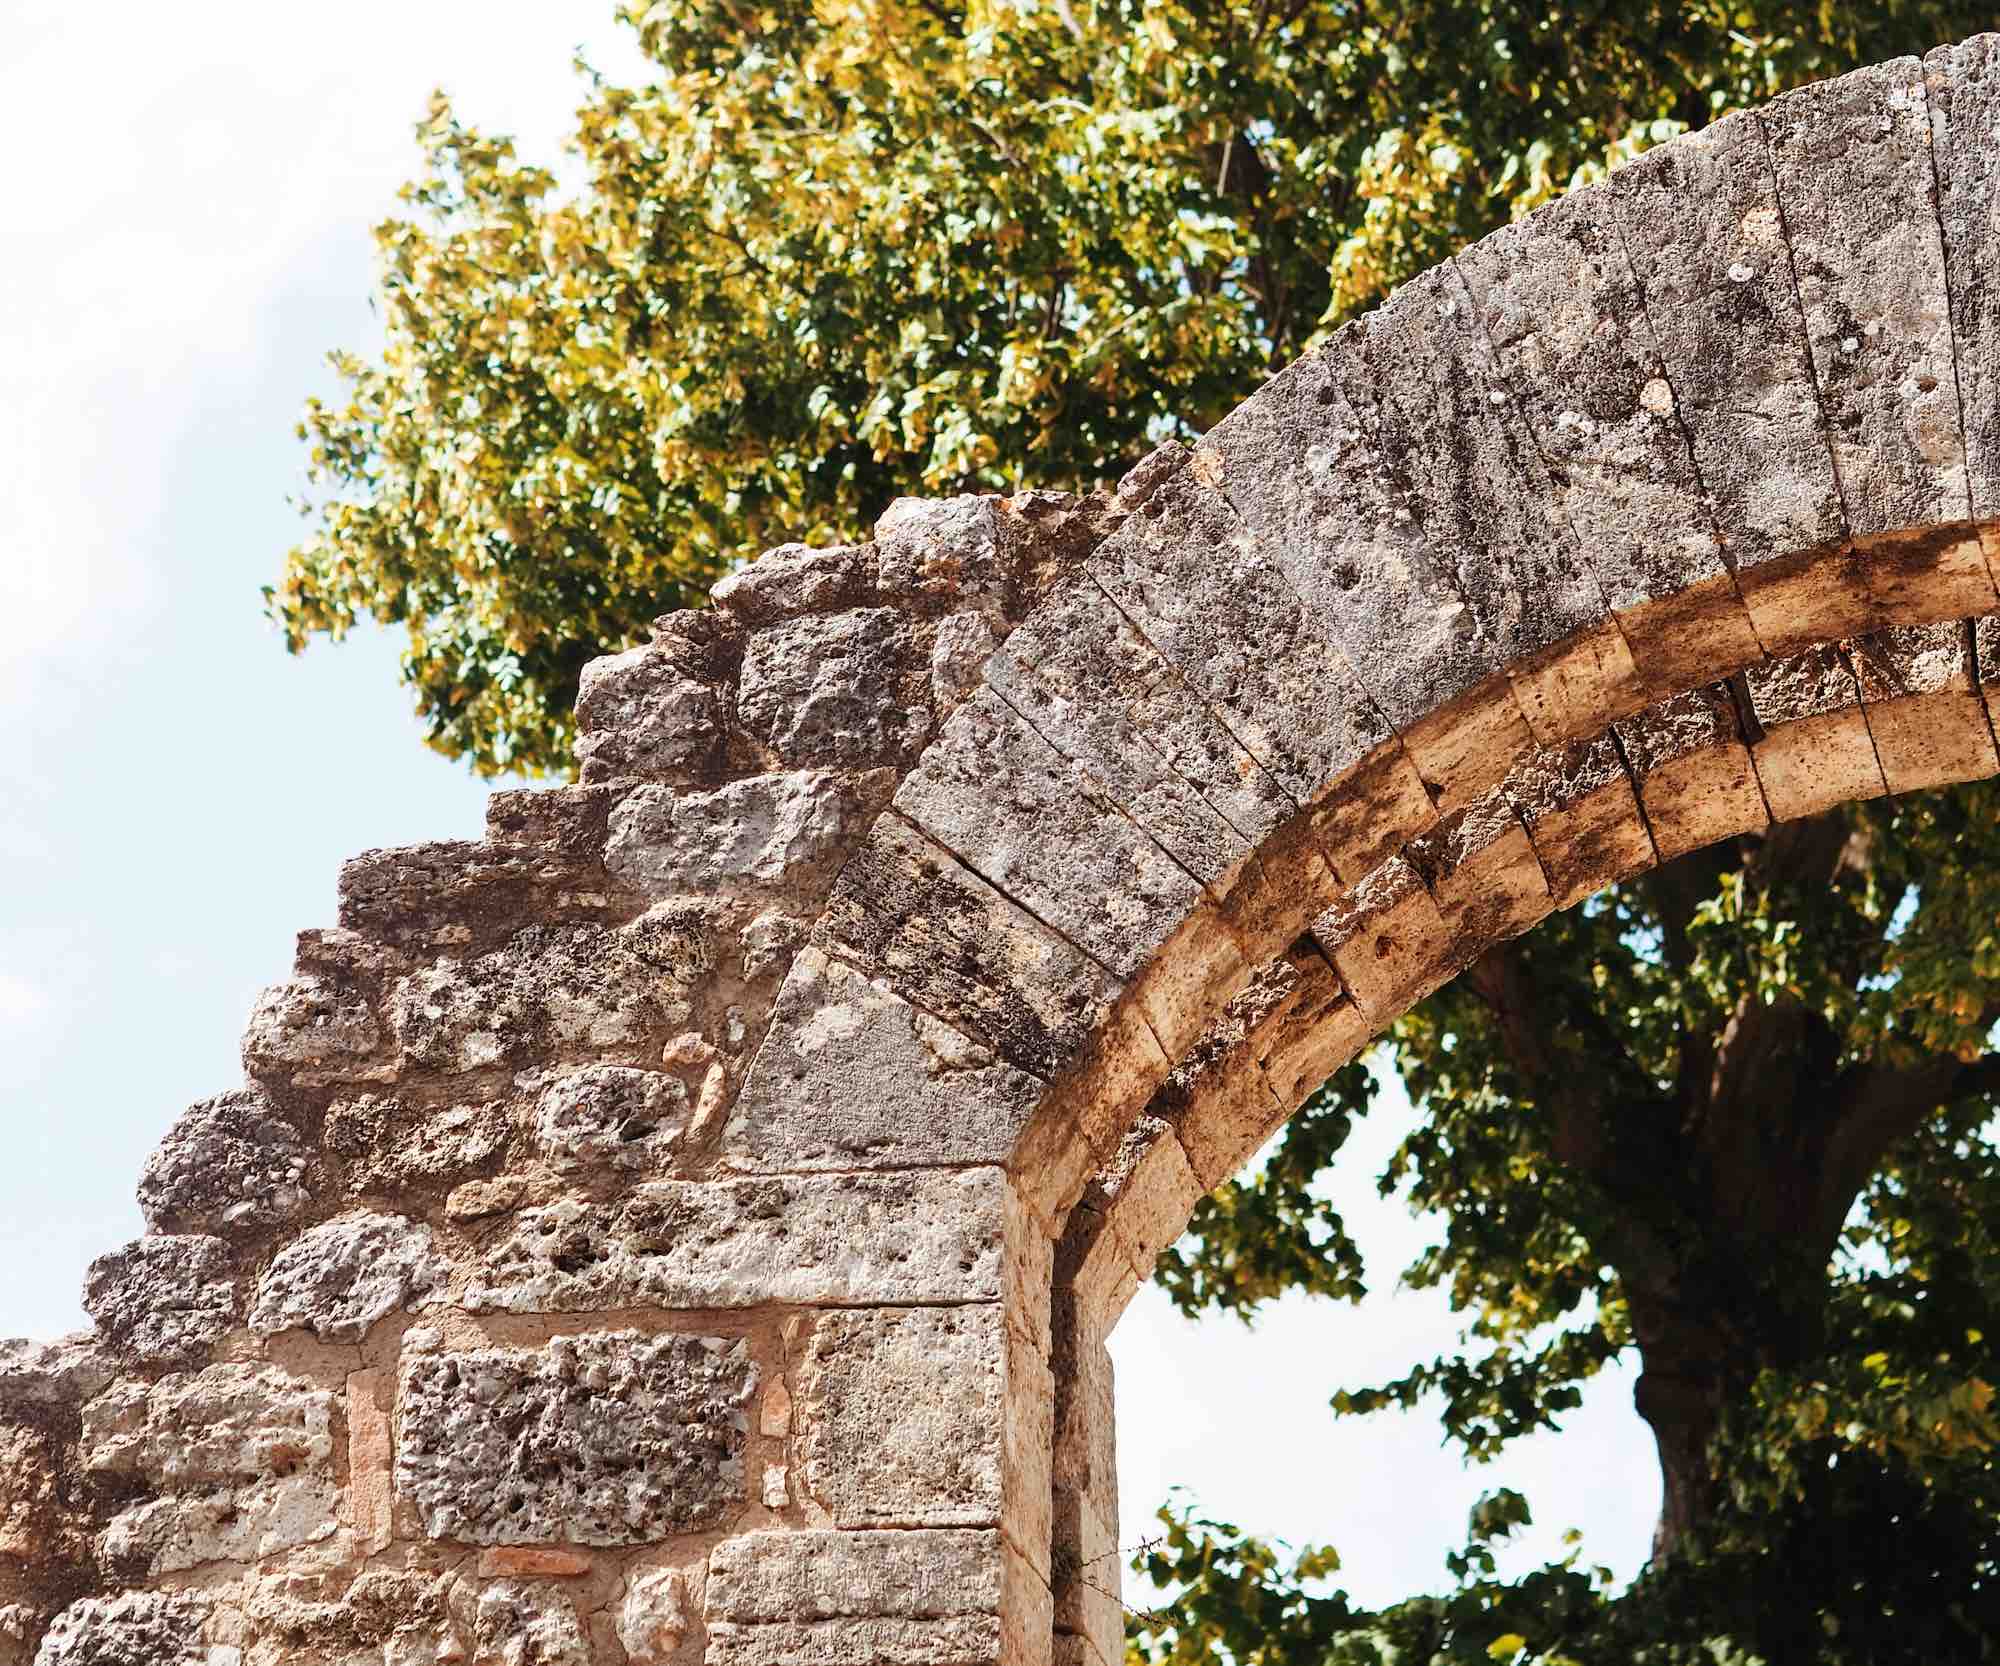 Arco nelle antiche mura di Volterra